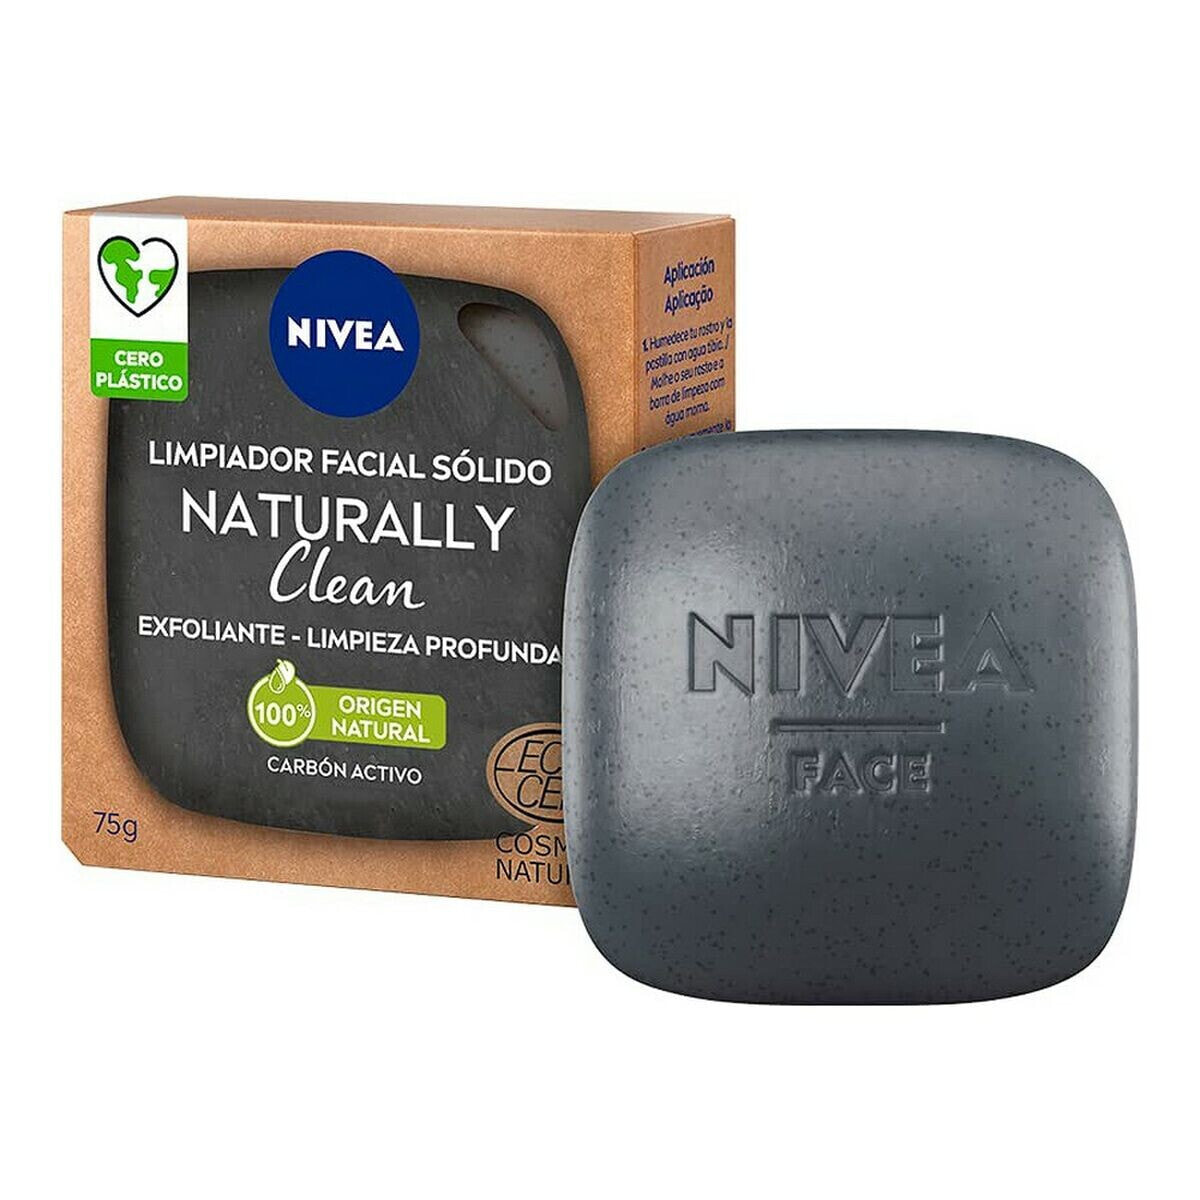 Очищающий гель для лица Naturally Clean Nivea 94491 твердый эксфолиант Активированный уголь 75 g